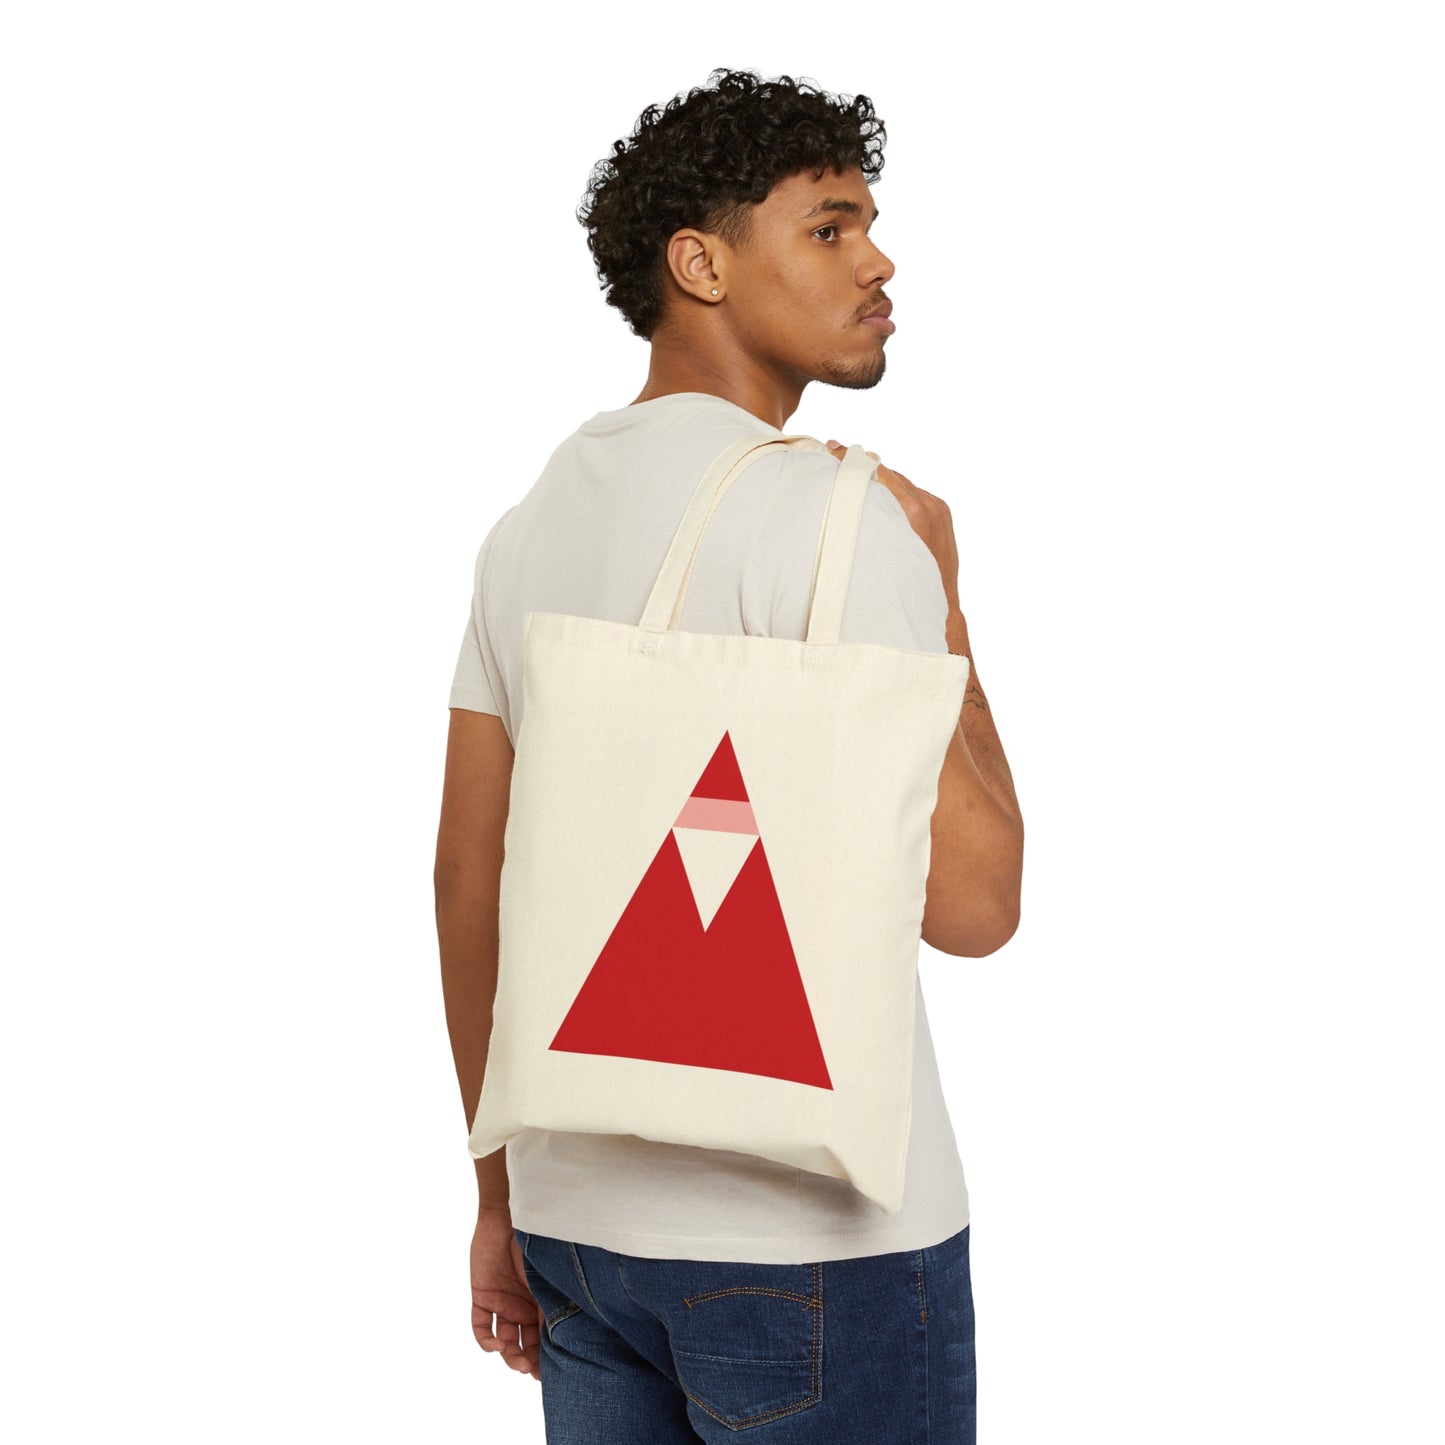 Santa Claus Minimal Abstract Art Canvas Shopping Cotton Tote Bag